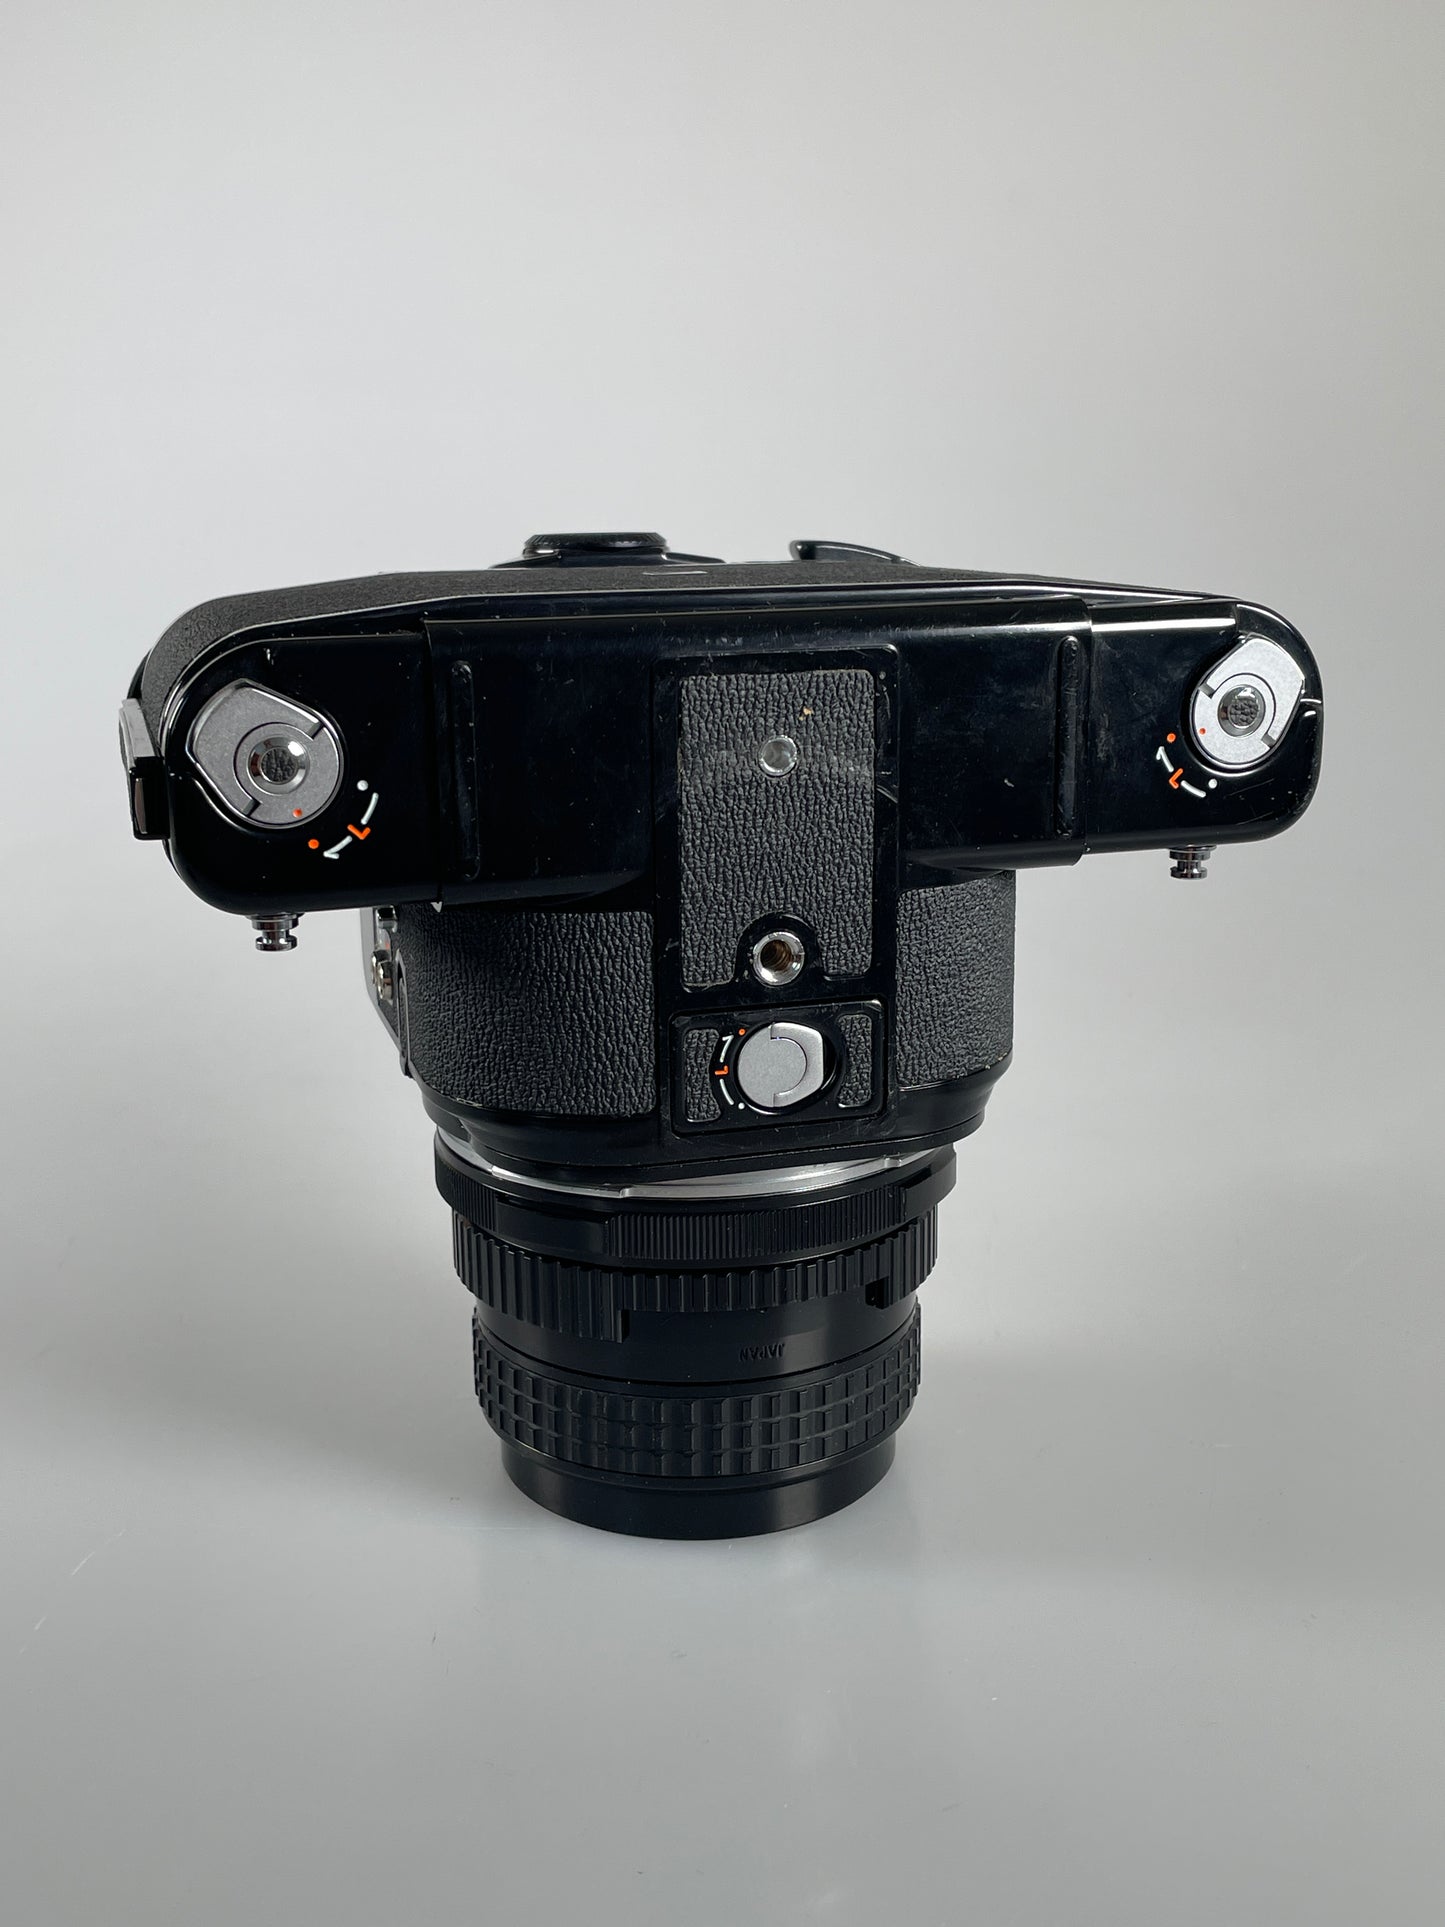 Pentax 67 6x7 MLU Body + 105mm F2.4 Lens Kit Metered CLAd